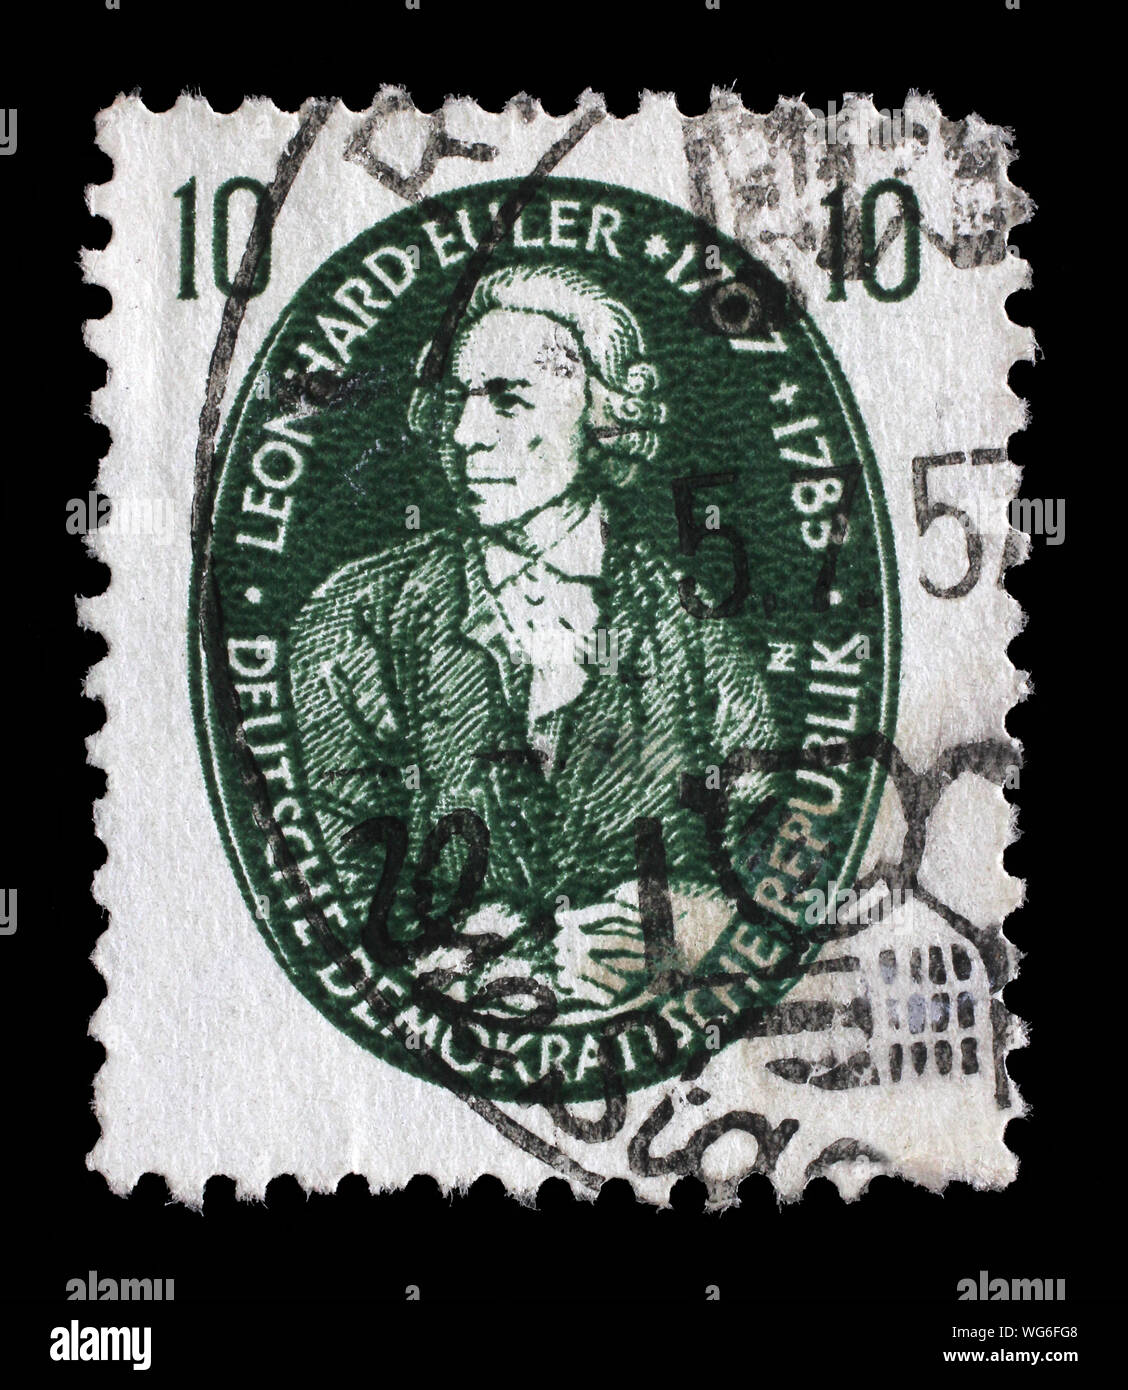 Timbro rilasciato in Germania - Repubblica Democratica (DDR) mostra Leonhard Euler matematico, fisico e astronomo, logician e ingegnere, 1957 circa. Foto Stock